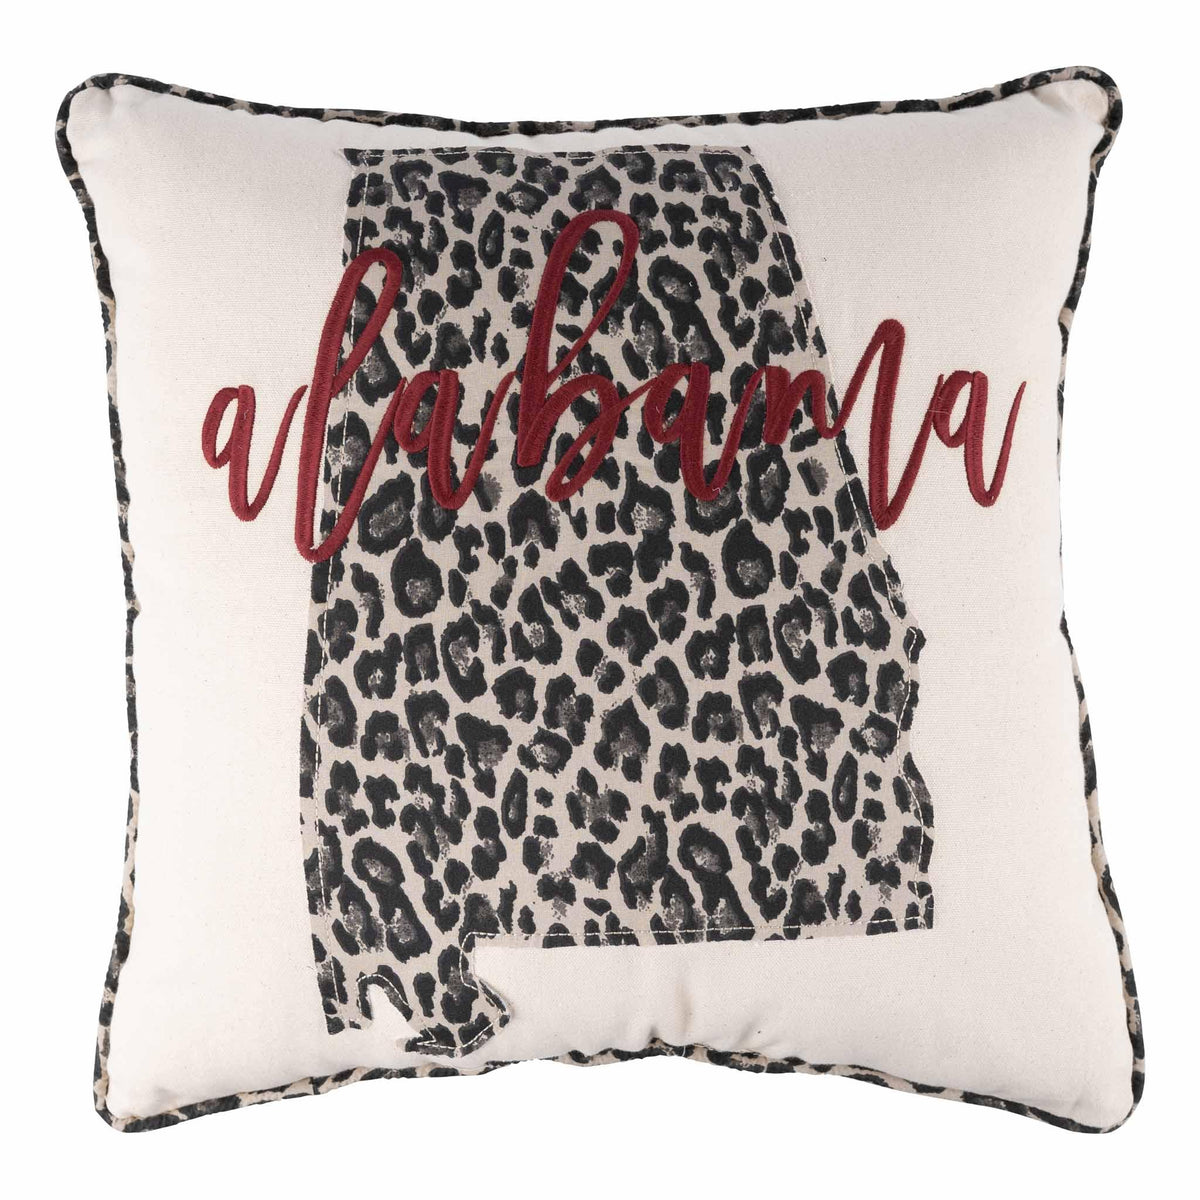 Alabama Cheetah Pillow - GLORY HAUS 